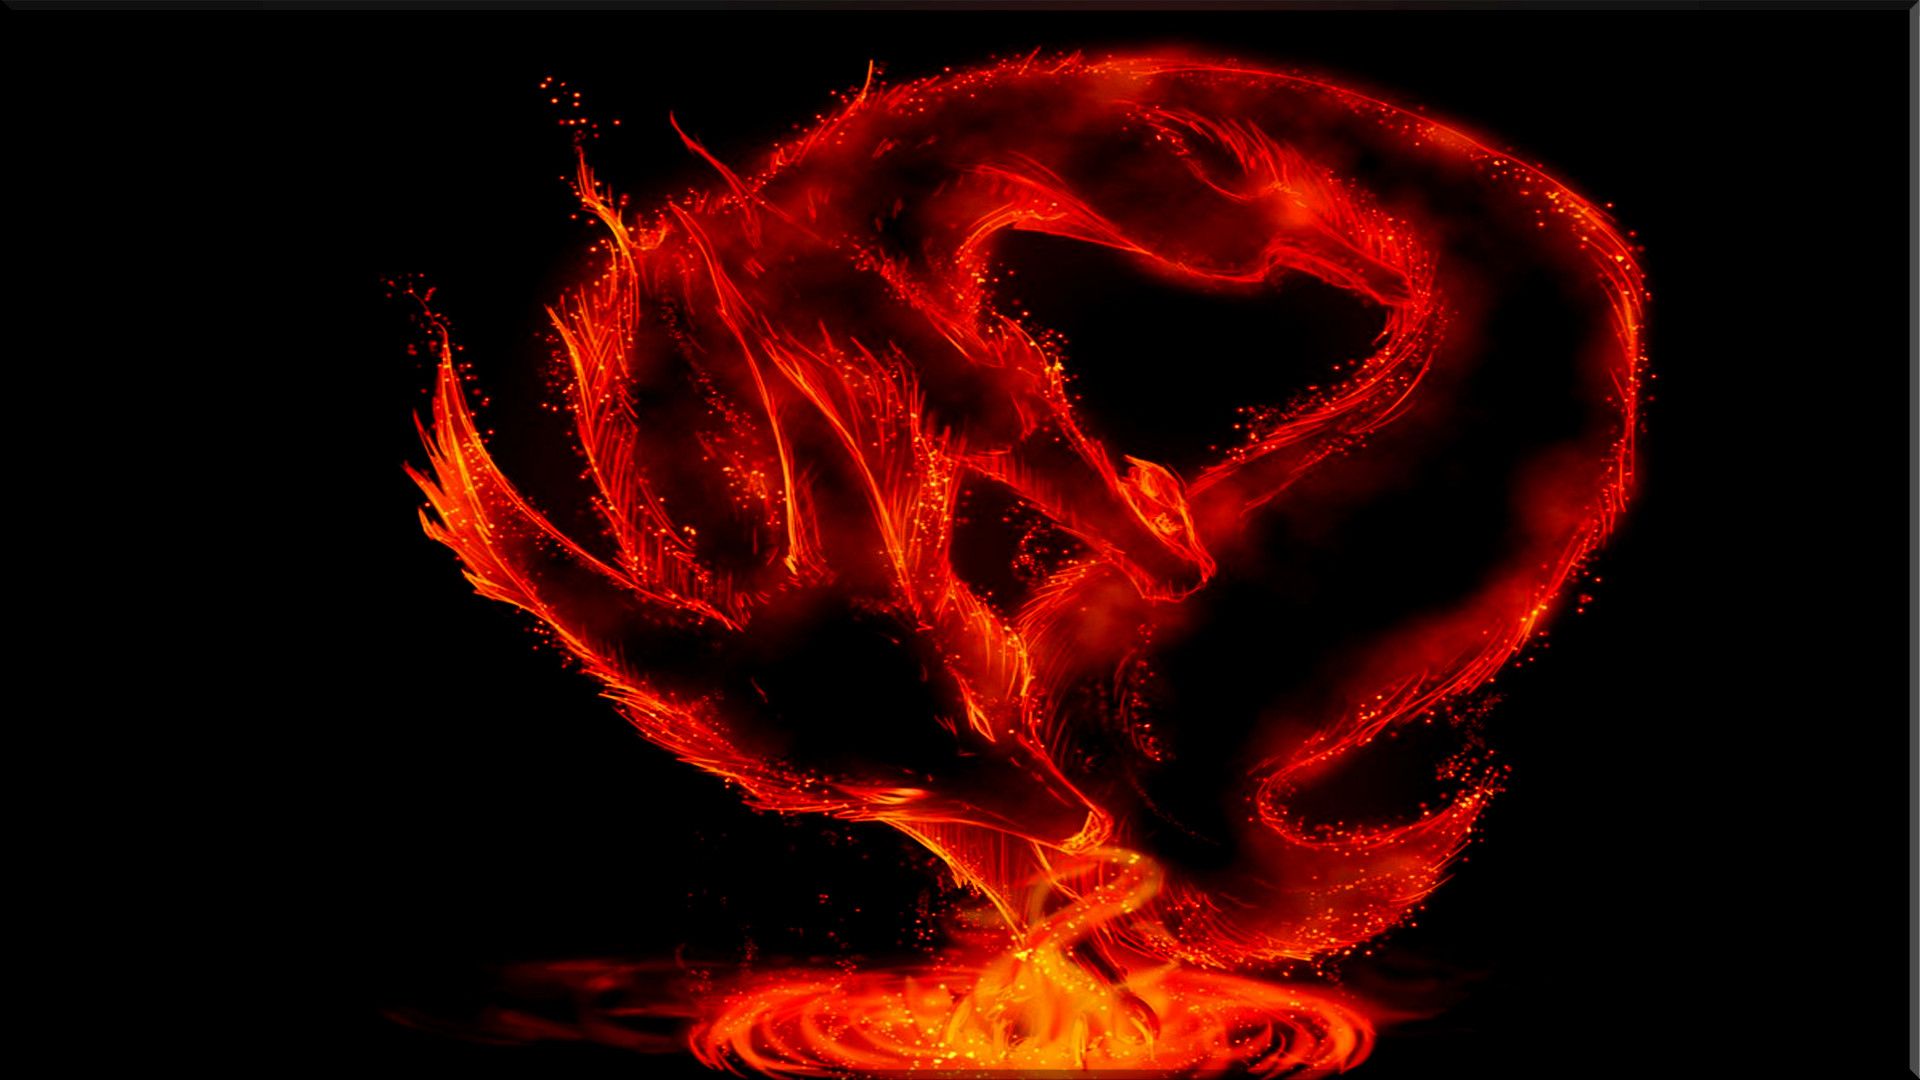 Fire Dragons Computer Wallpaper, Desktop Background